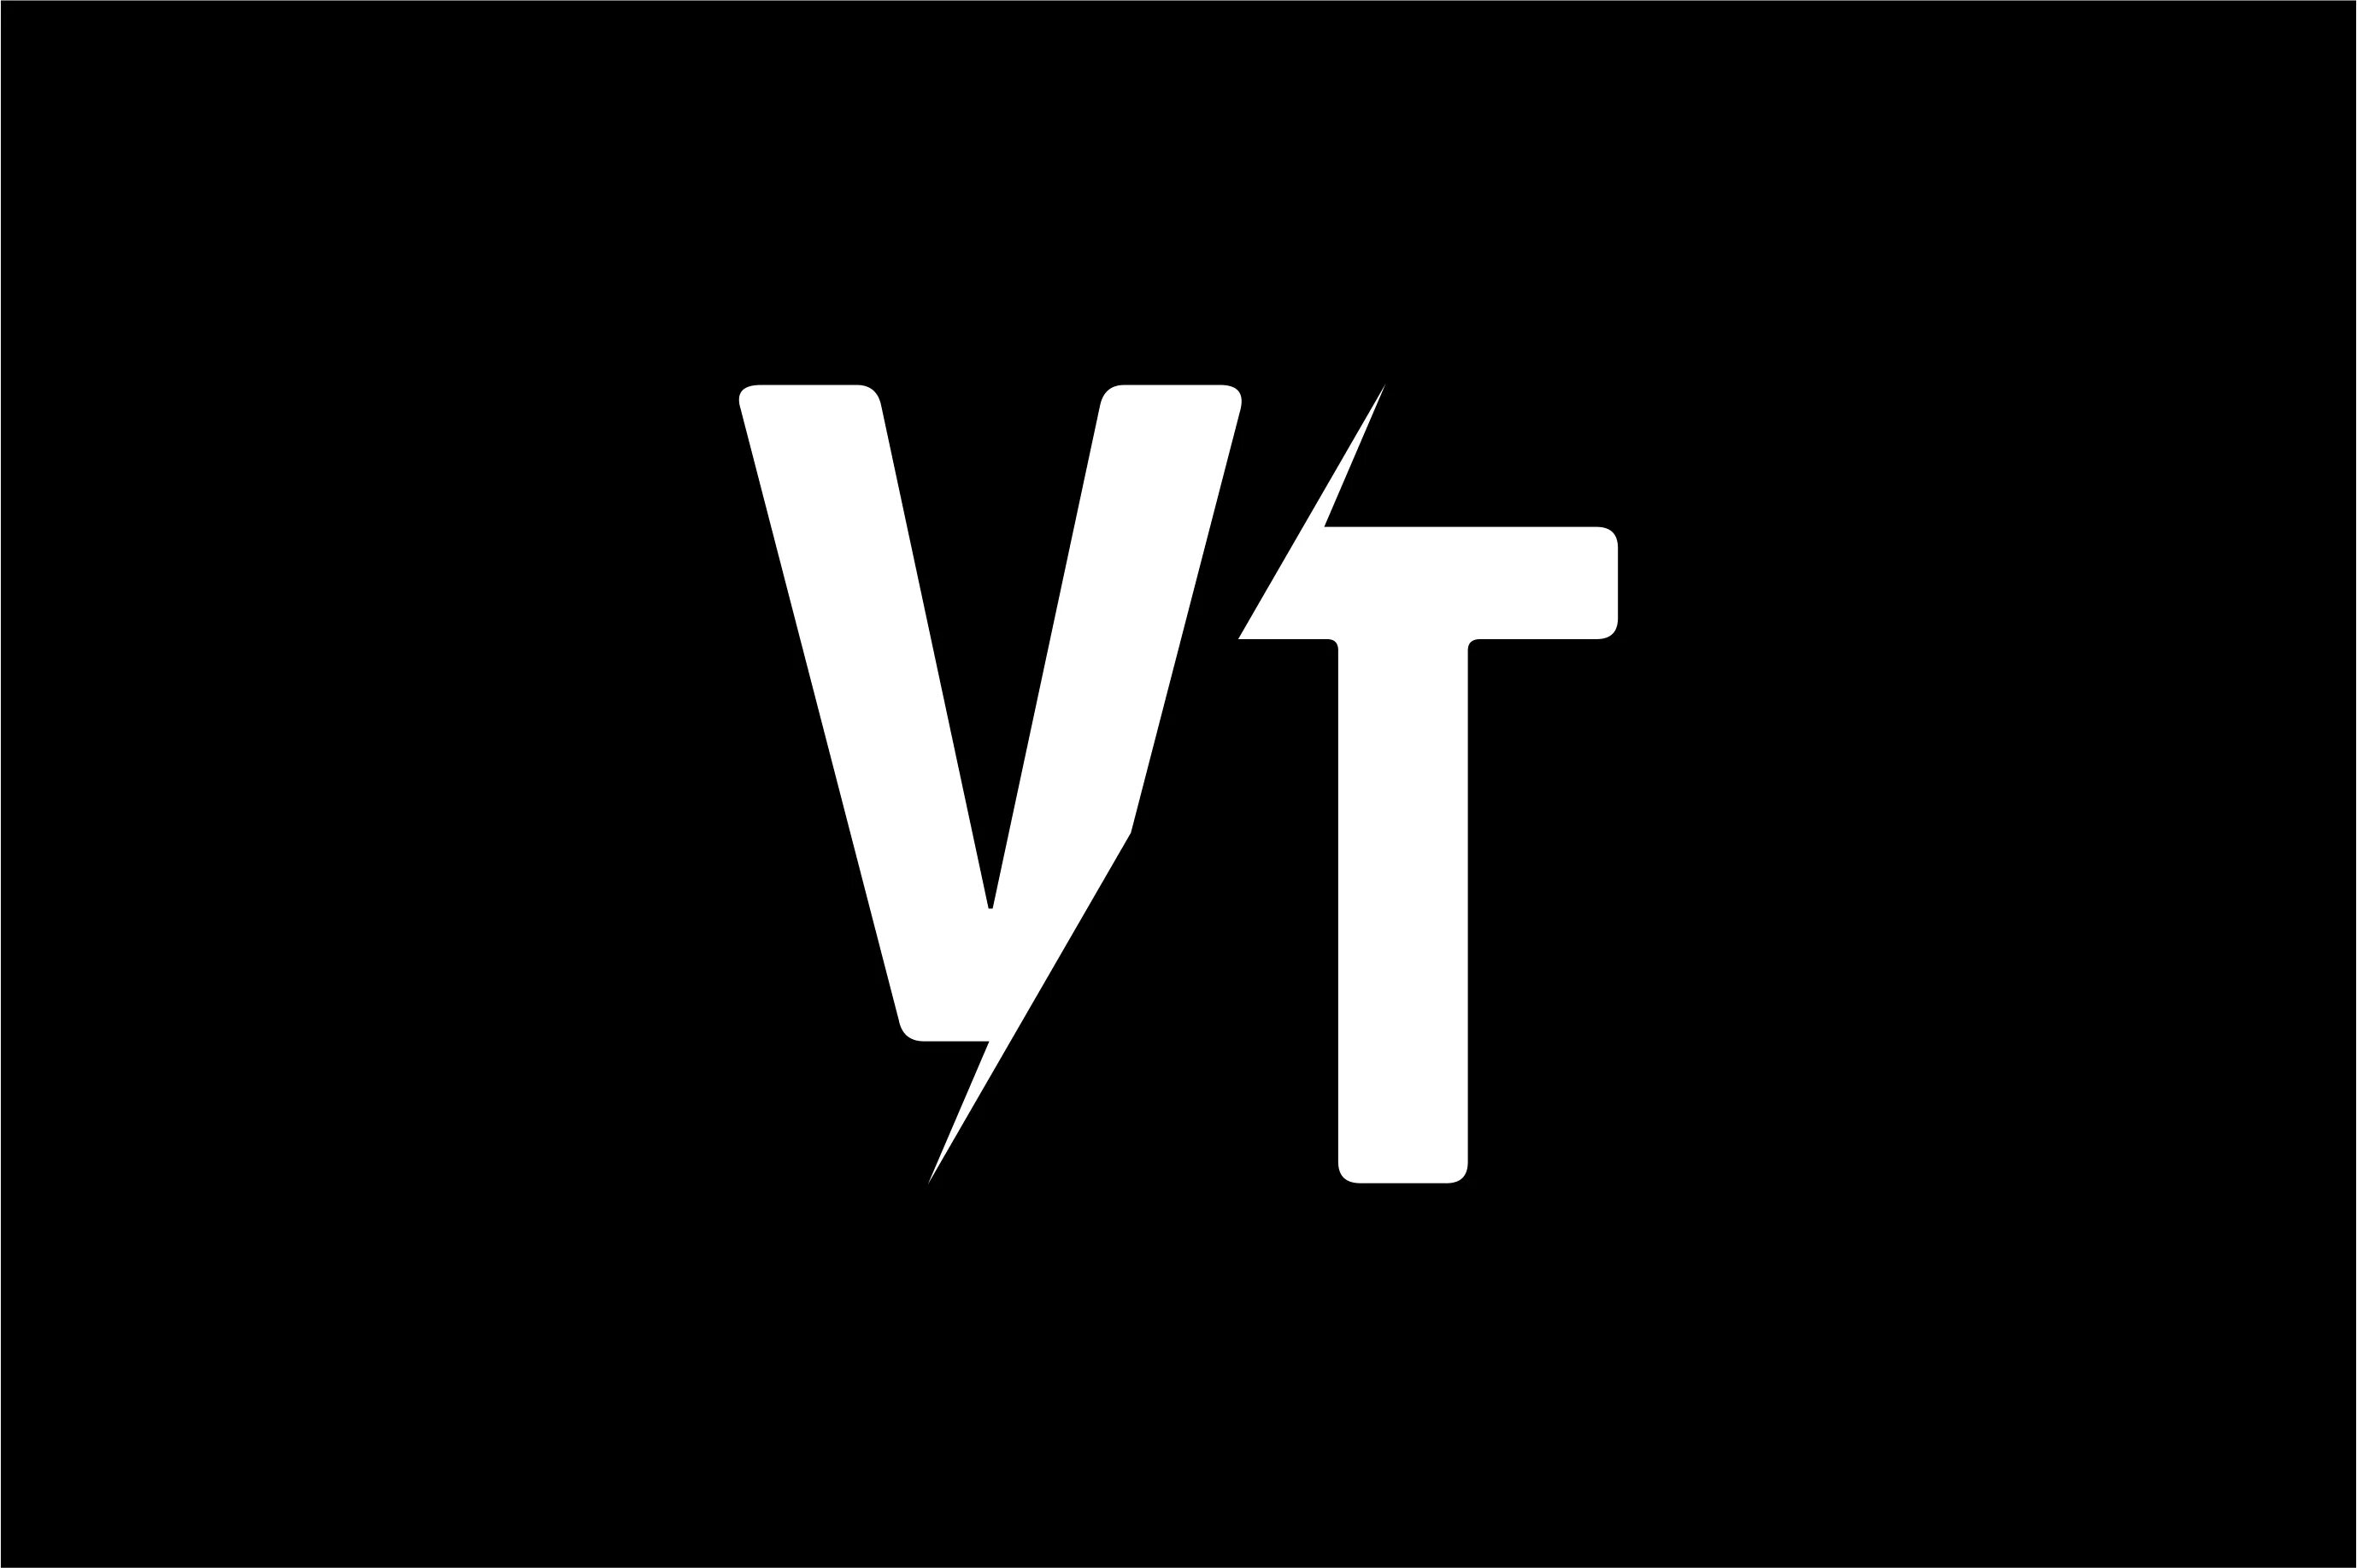 V t group. Красивые логотипы. Буквы VT. VT logo. Логотипы красивые современные.